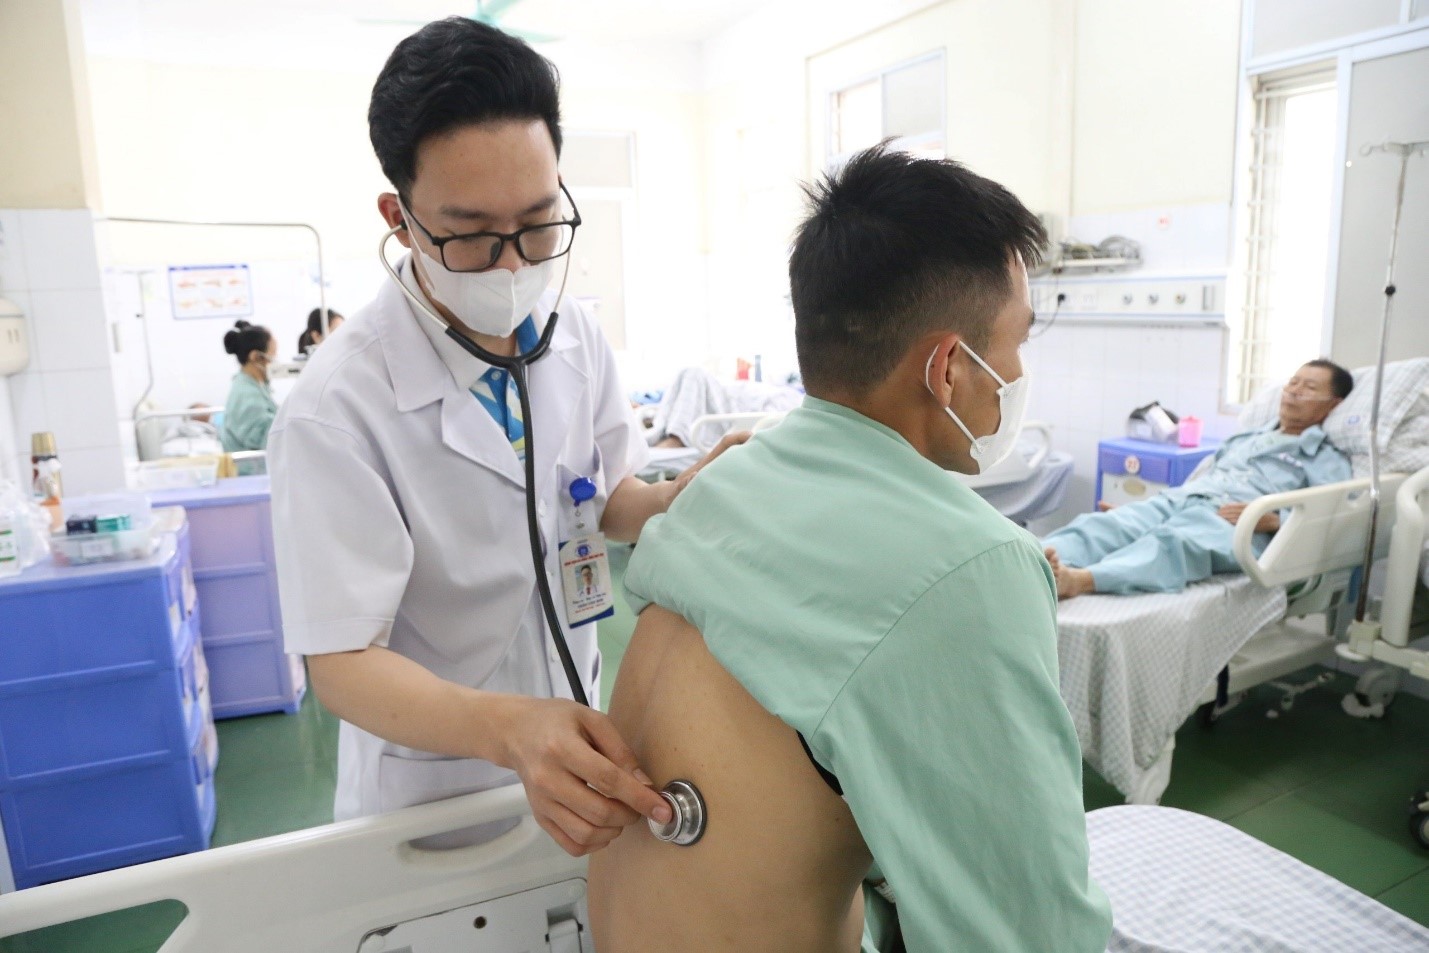 Bác sĩ Nội trú – Trần Văn Sơn đang khám và tư vấn cho người bệnh